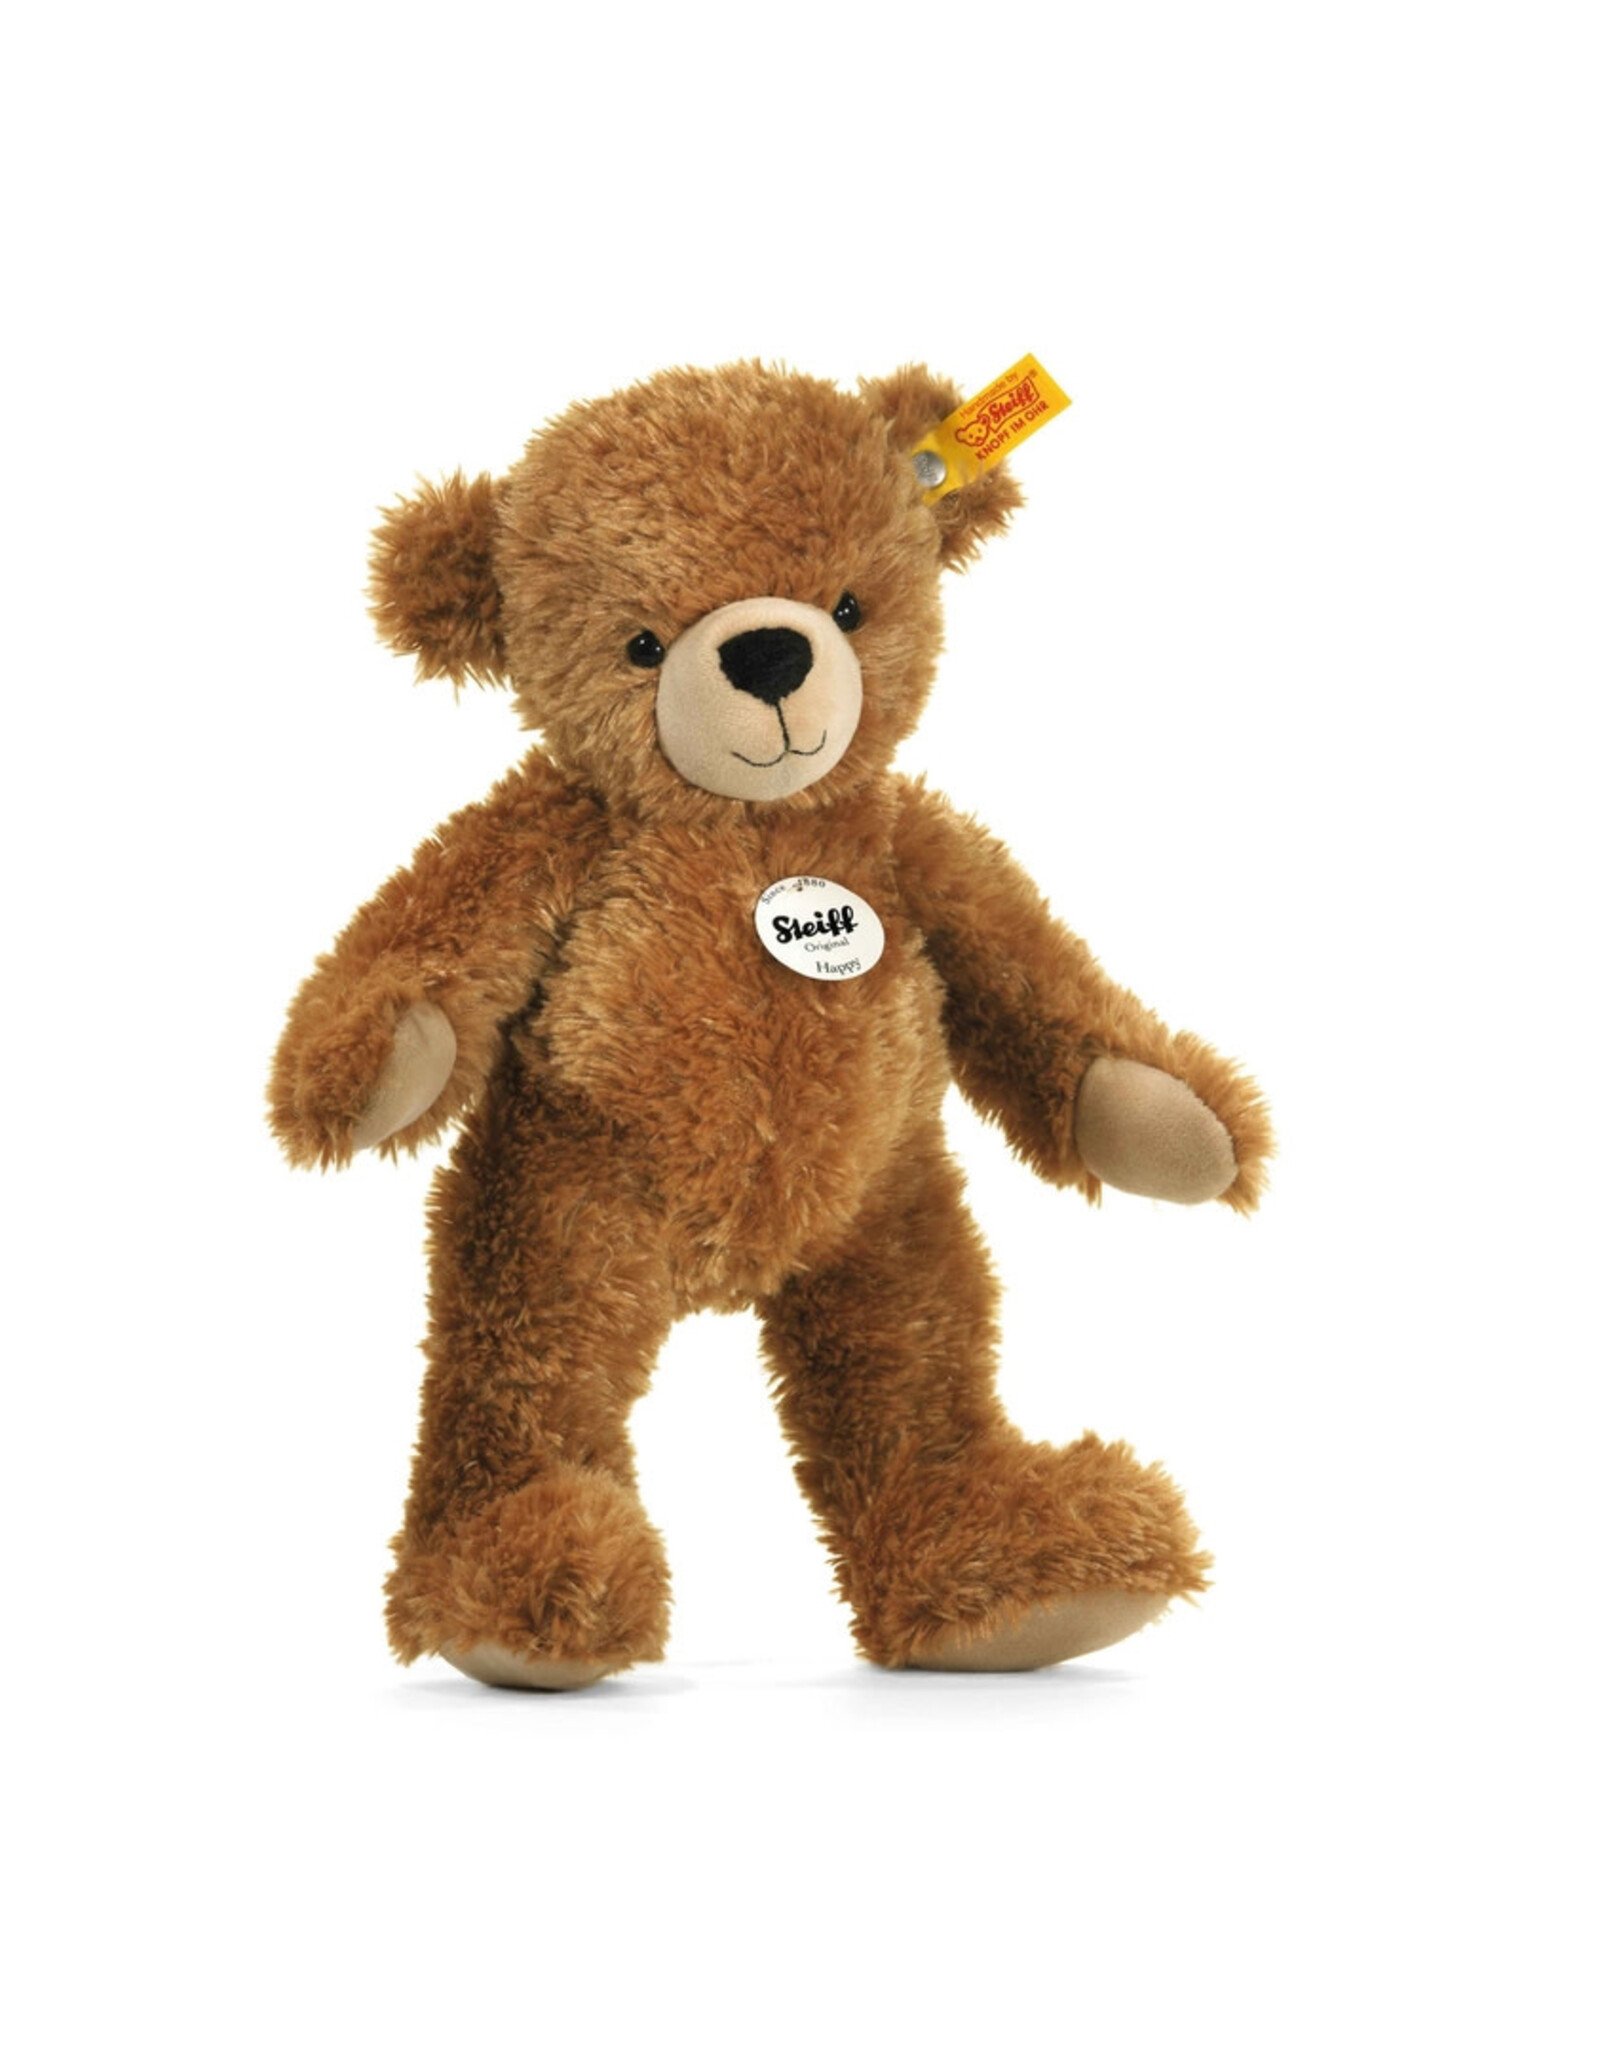 Steiff 16" Happy Teddy Bear Plush Toy